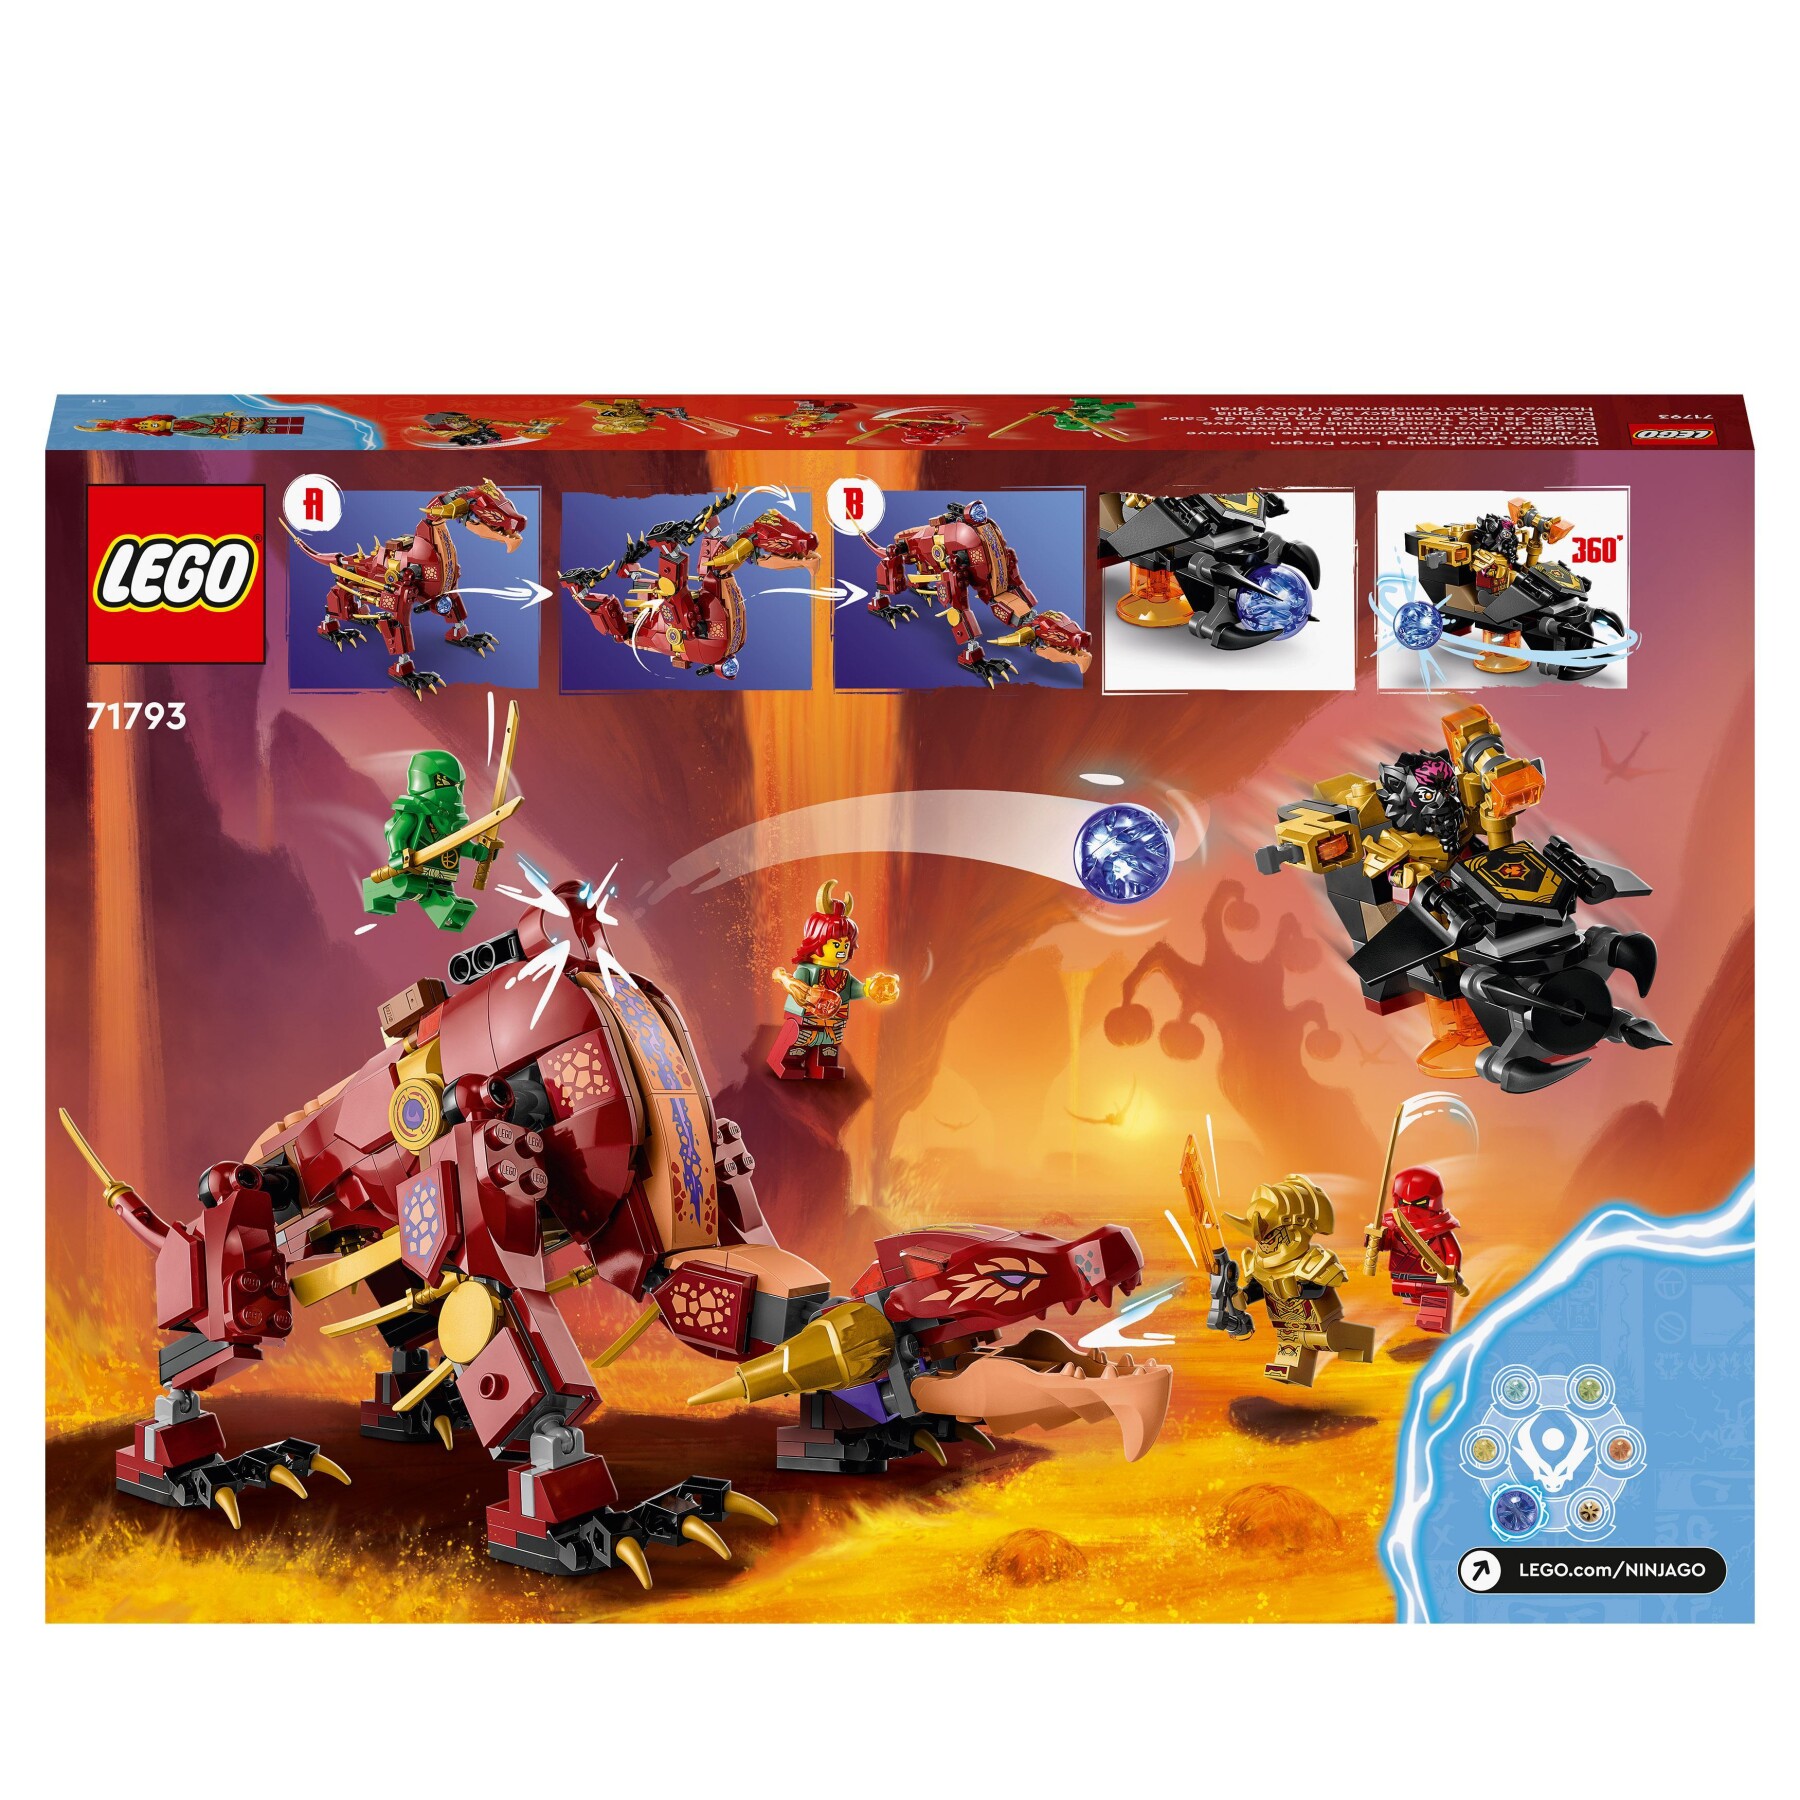 Lego ninjago 71793 dragone di lava transformer heatwave, serie dragons rising con drago giocattolo e minifigure, giochi ninja - LEGO NINJAGO